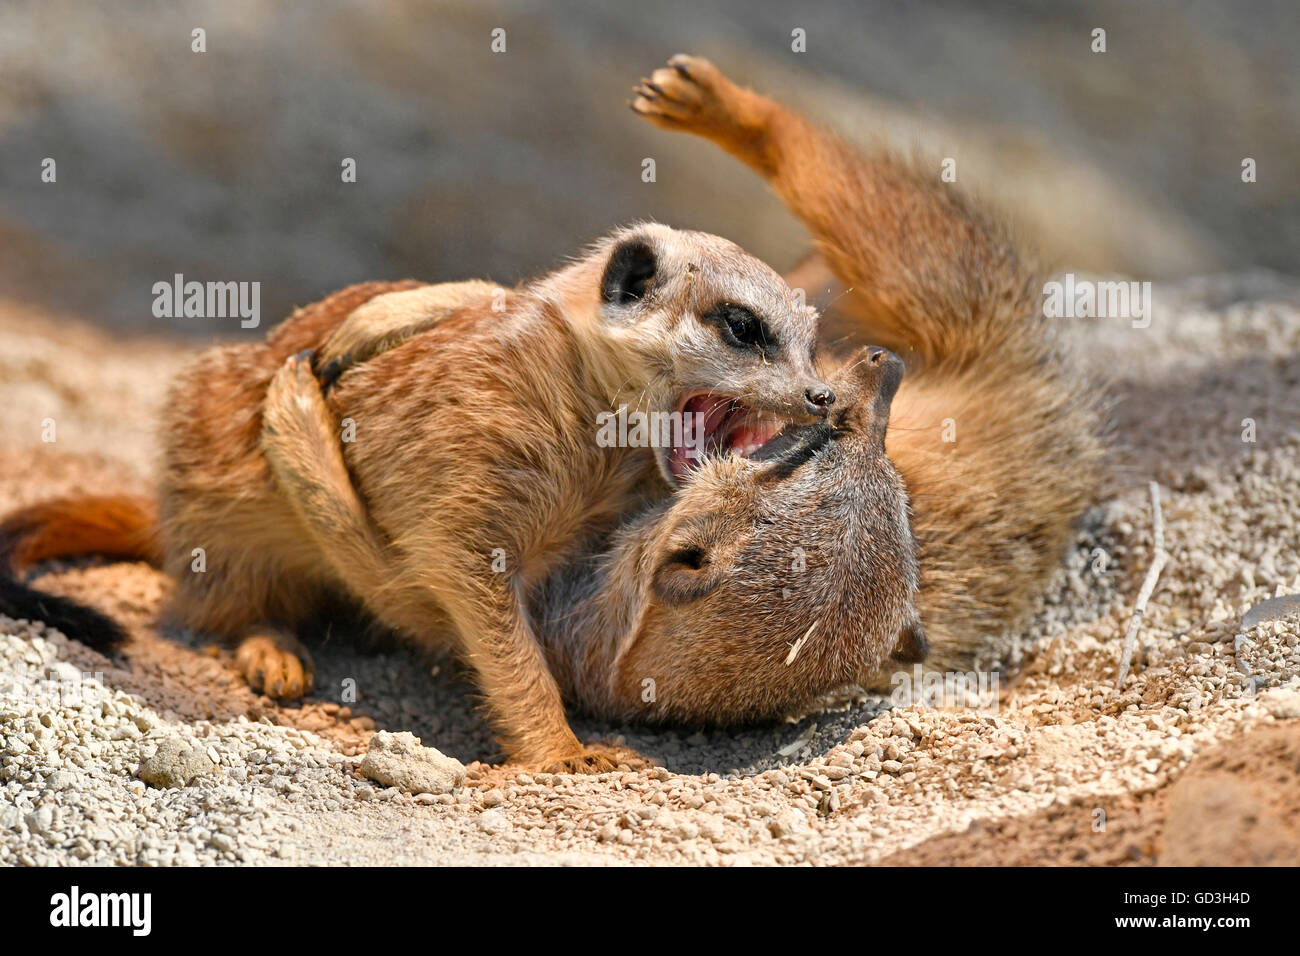 Les suricates (Suricata suricatta), l'enfant et de la mère, de jouer les uns avec les autres, captive Banque D'Images